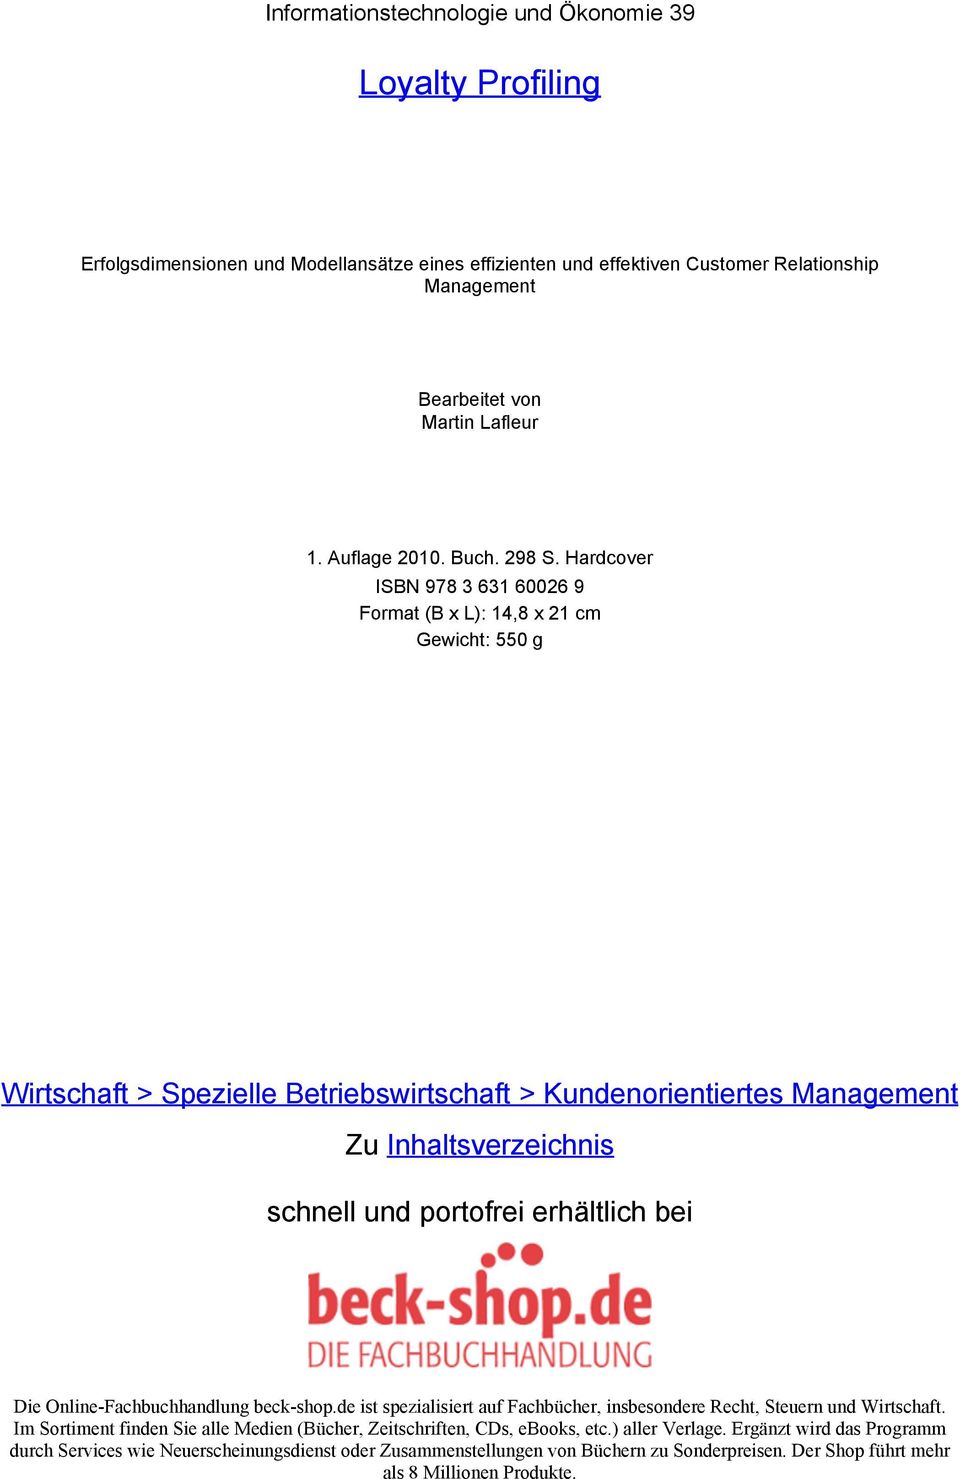 Hardcover ISBN 978 3 631 60026 9 Format (B x L): 14,8 x 21 cm Gewicht: 550 g Wirtschaft > Spezielle Betriebswirtschaft > Kundenorientiertes Management Zu Inhaltsverzeichnis schnell und portofrei